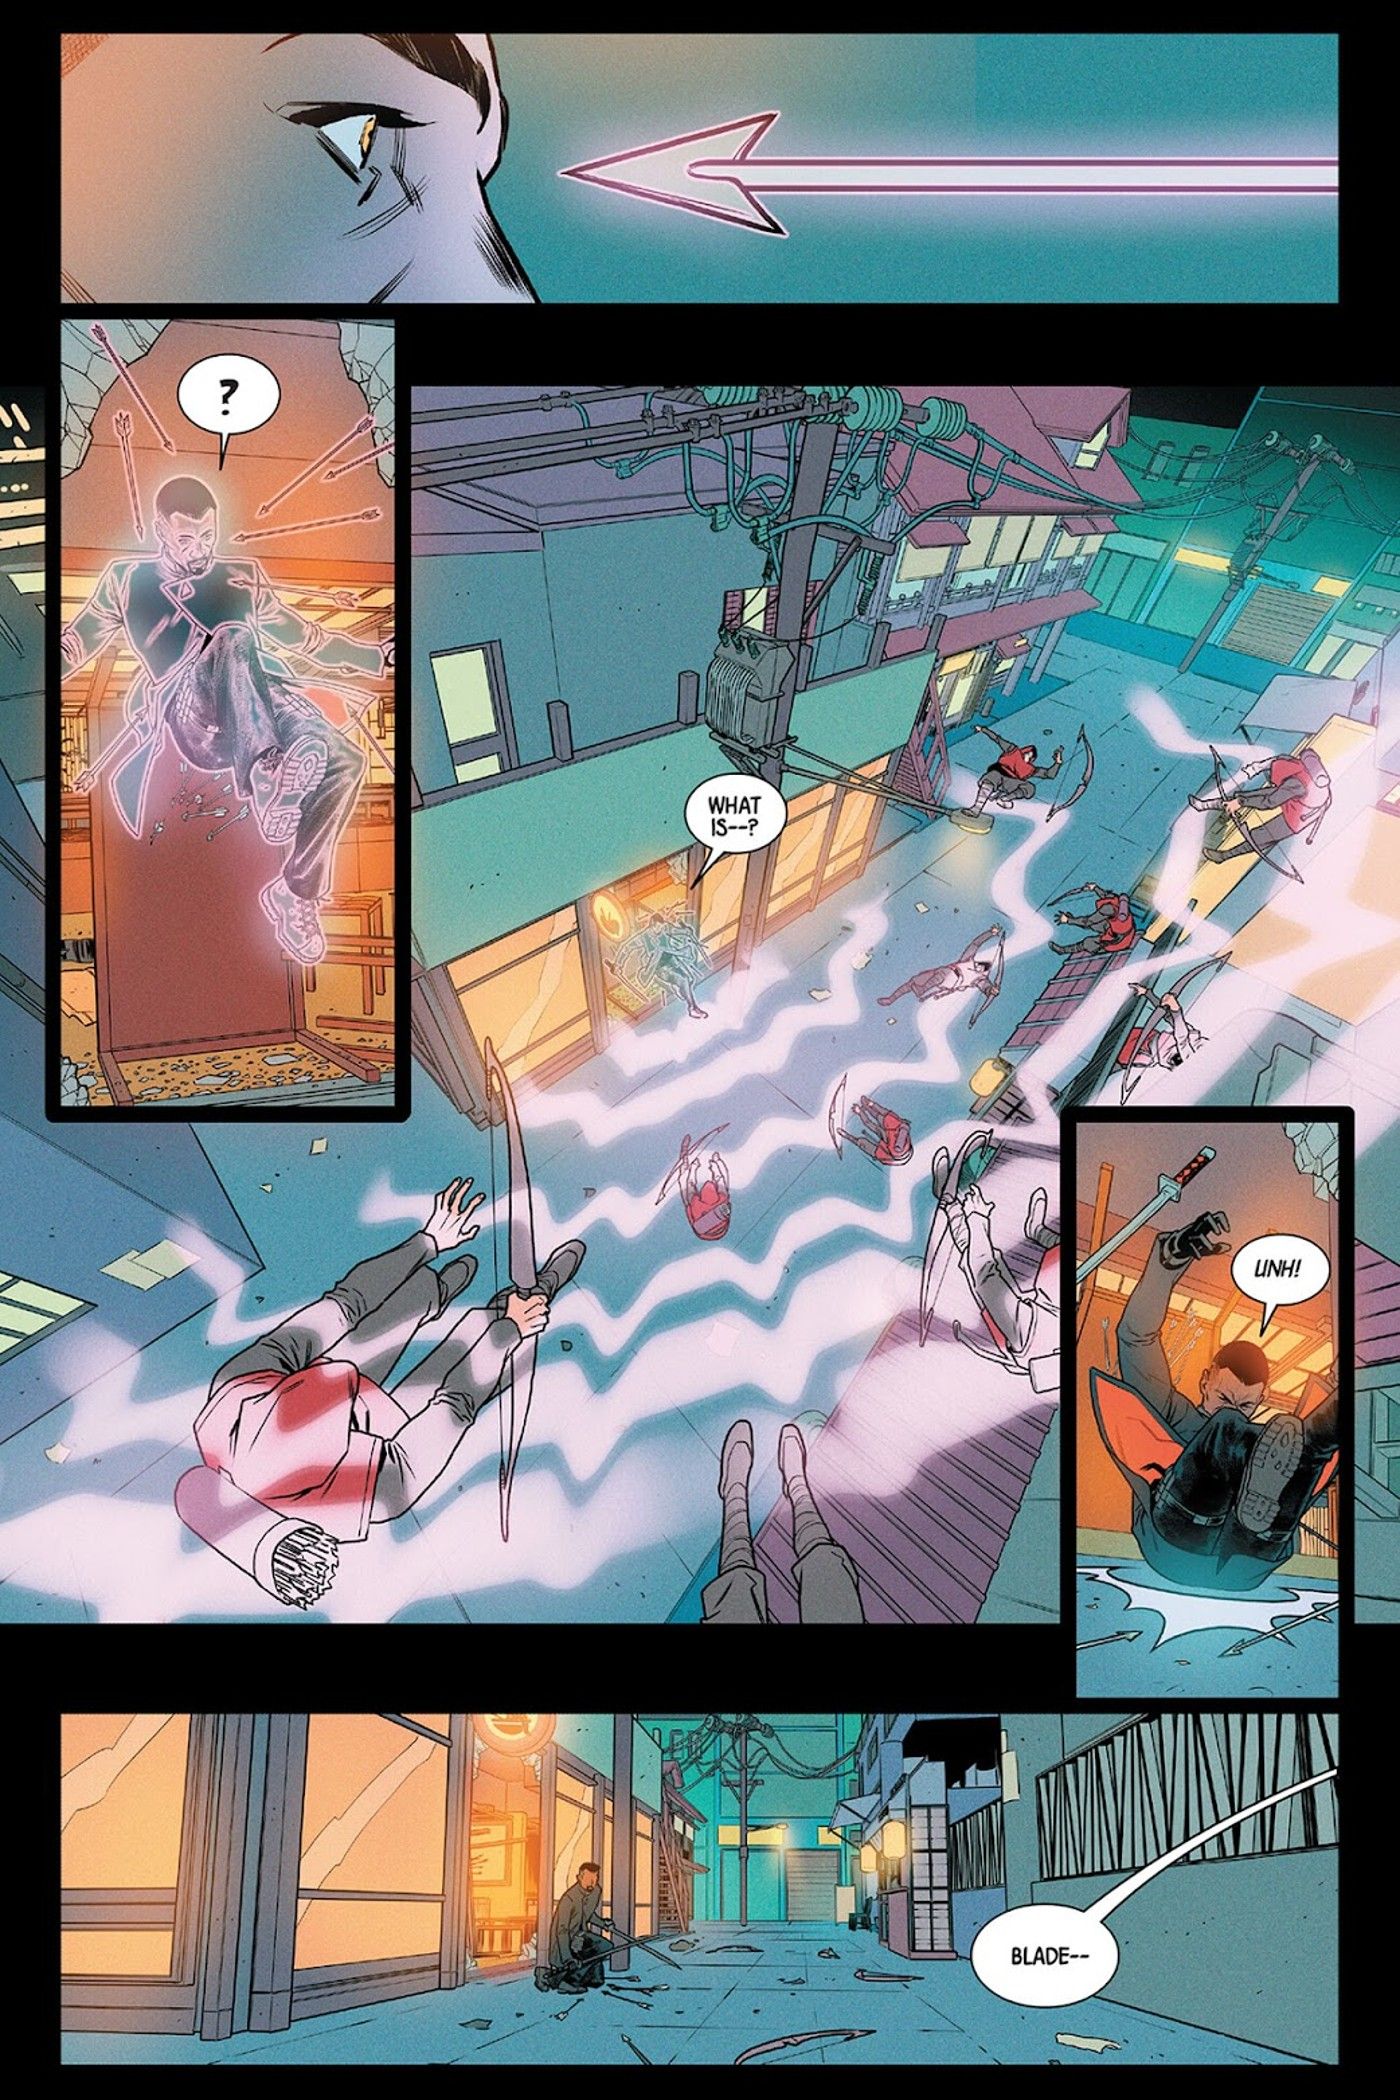 Seite aus Blade Nr. 3, auf der Doctor Strange zu sehen ist, wie er Blade im letzten Moment rettet